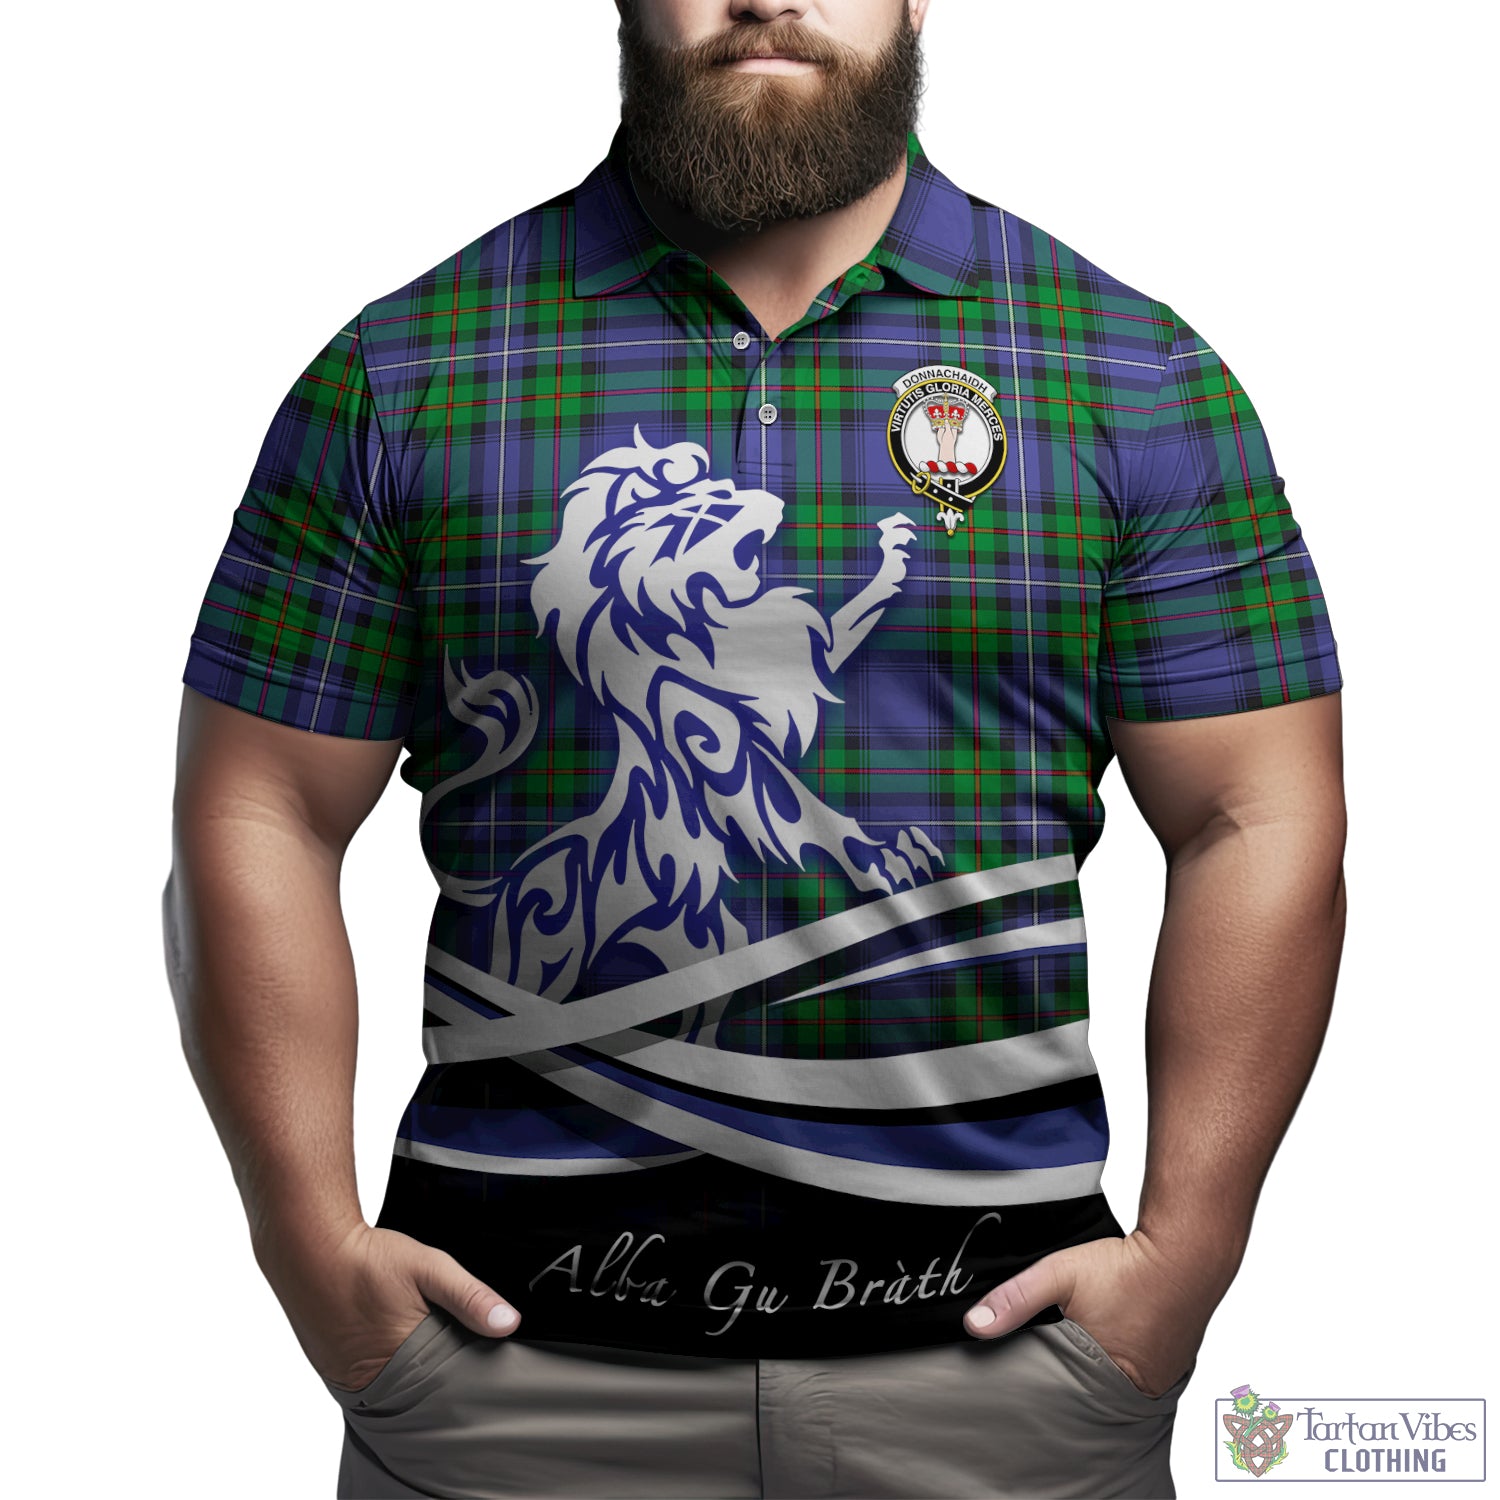 donnachaidh-tartan-polo-shirt-with-alba-gu-brath-regal-lion-emblem